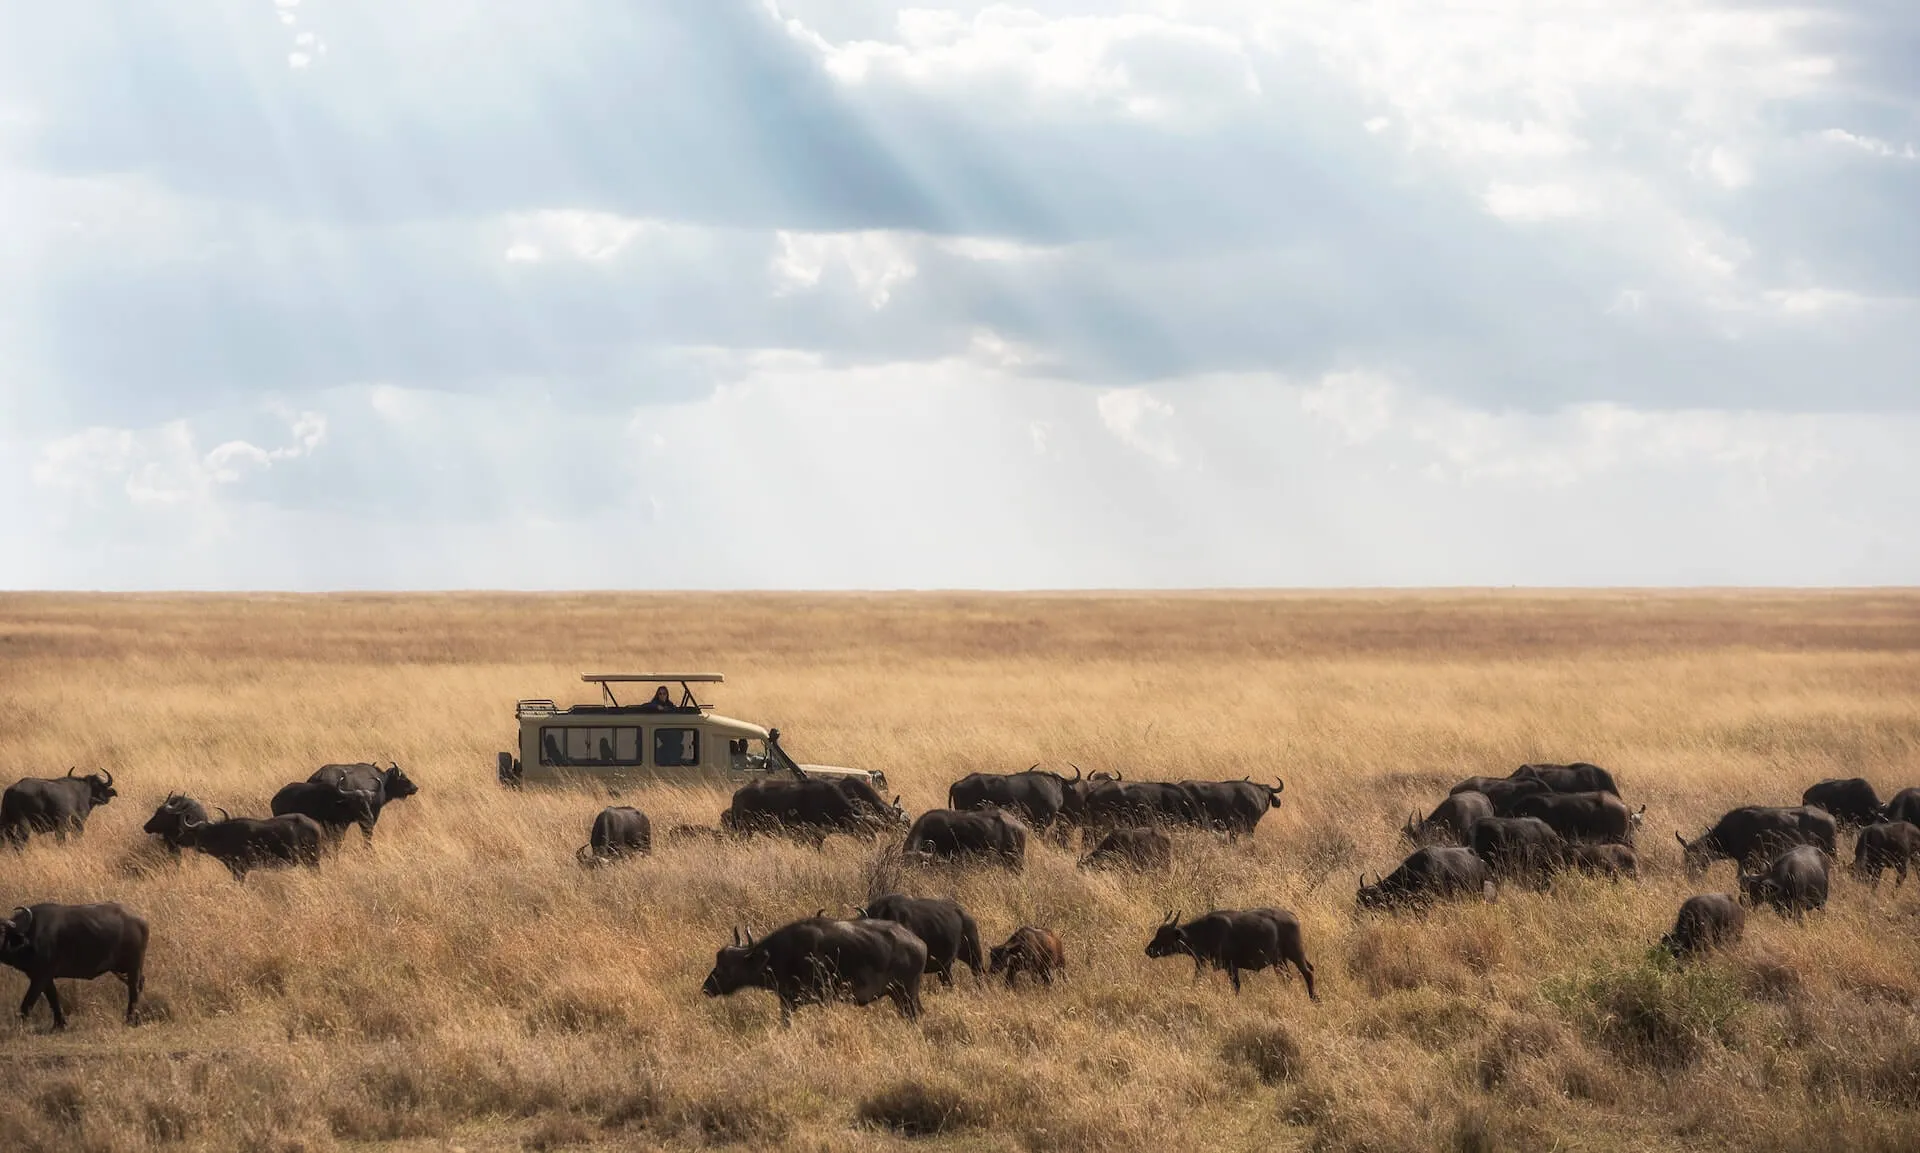 A tour van overlooking a herd of buffalos in Kenya